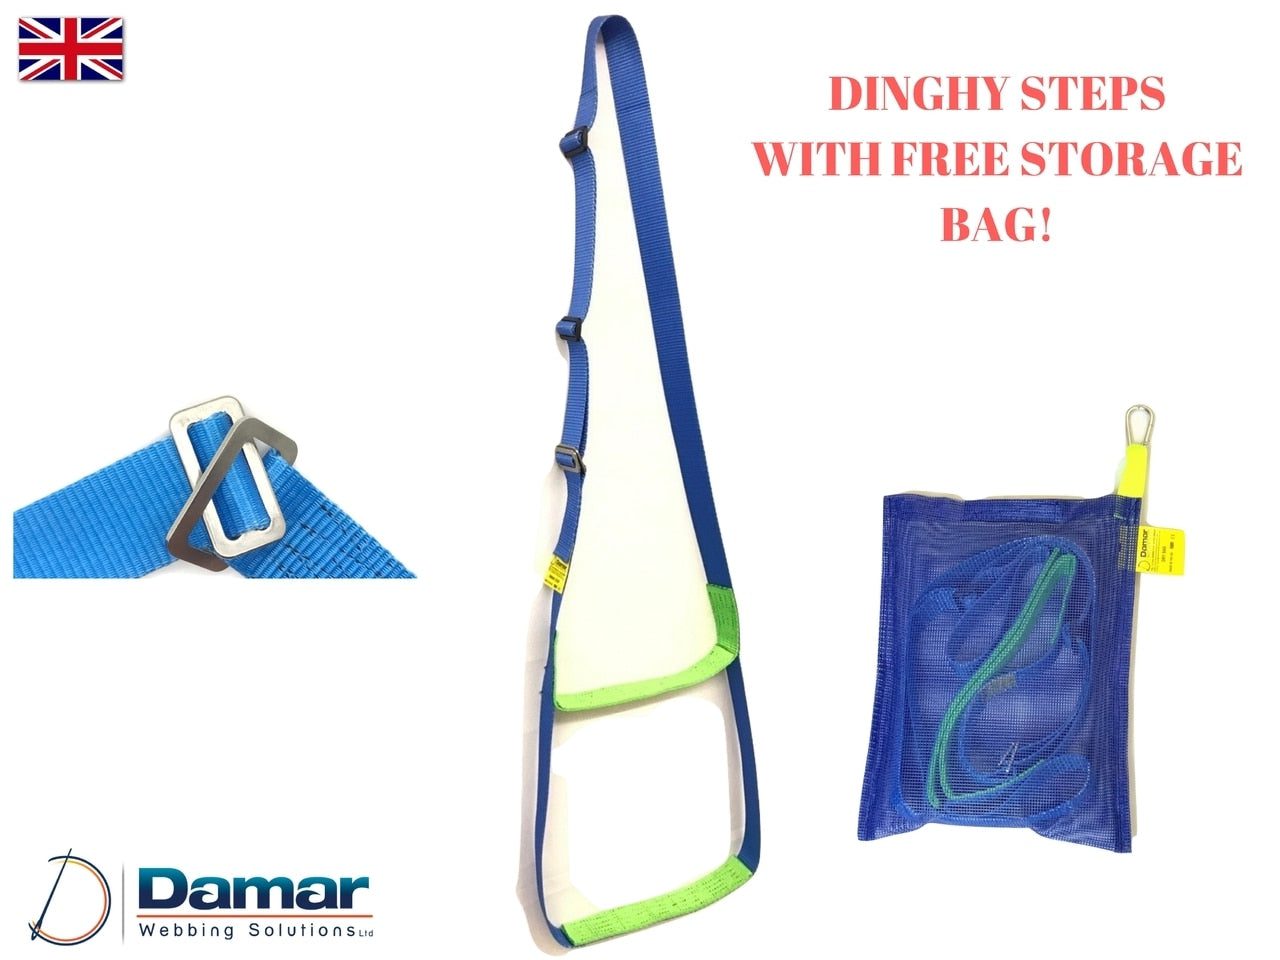 Dinghy Step Inflatable Boat Boarding Ladder - Damar Webbing Solutions Ltd